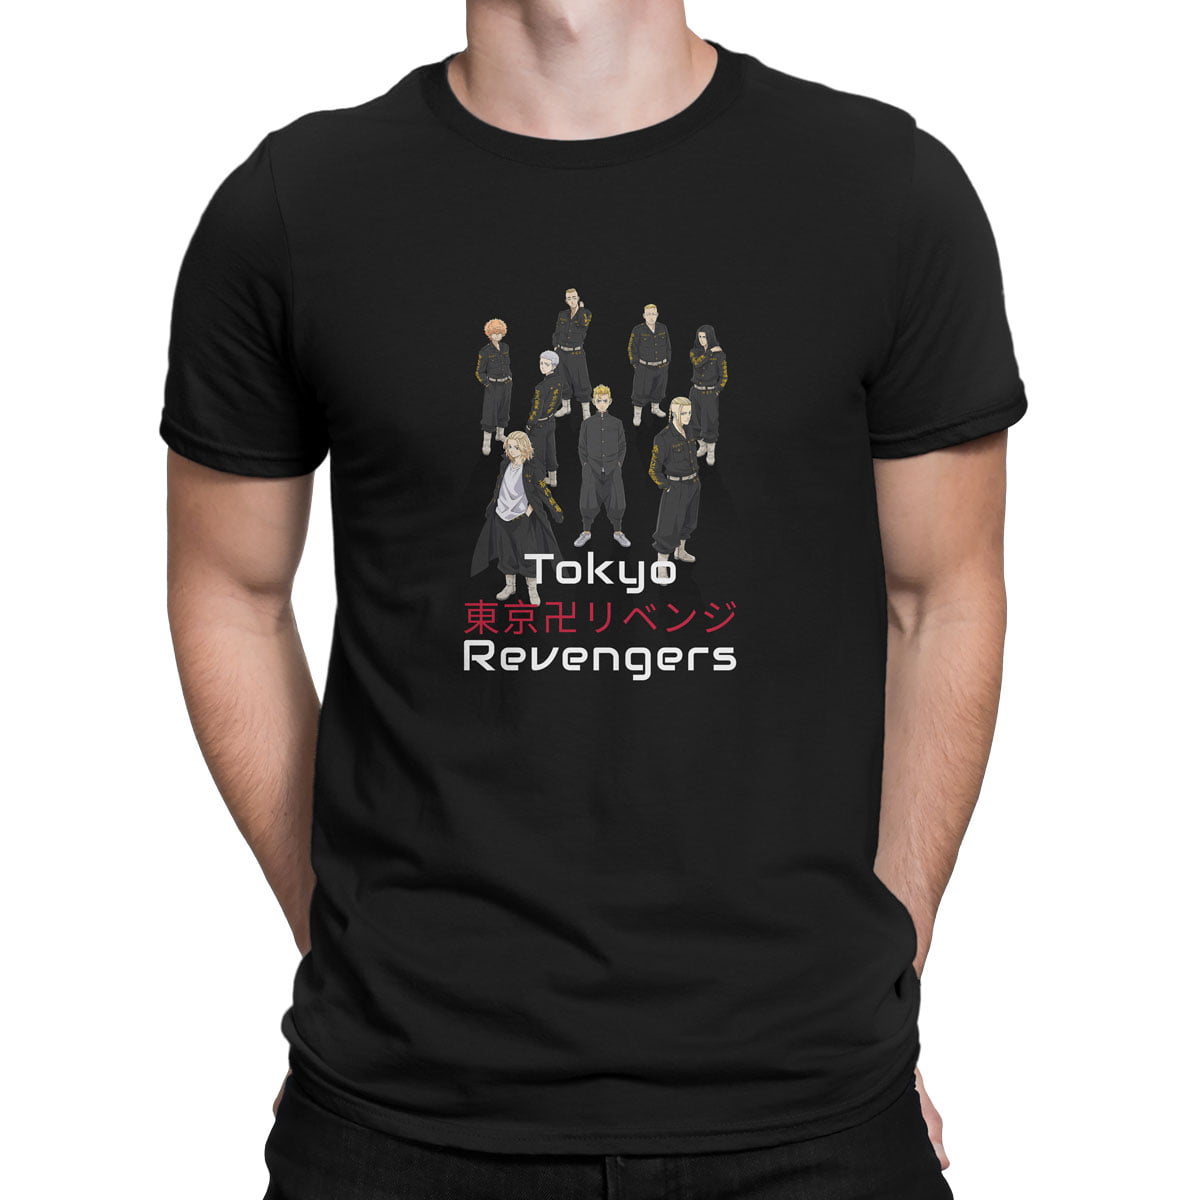 Tokyo revengers all no2 erkek tisort s - tokyo revengers karakterleri no2 baskılı erkek t-shirt - figurex